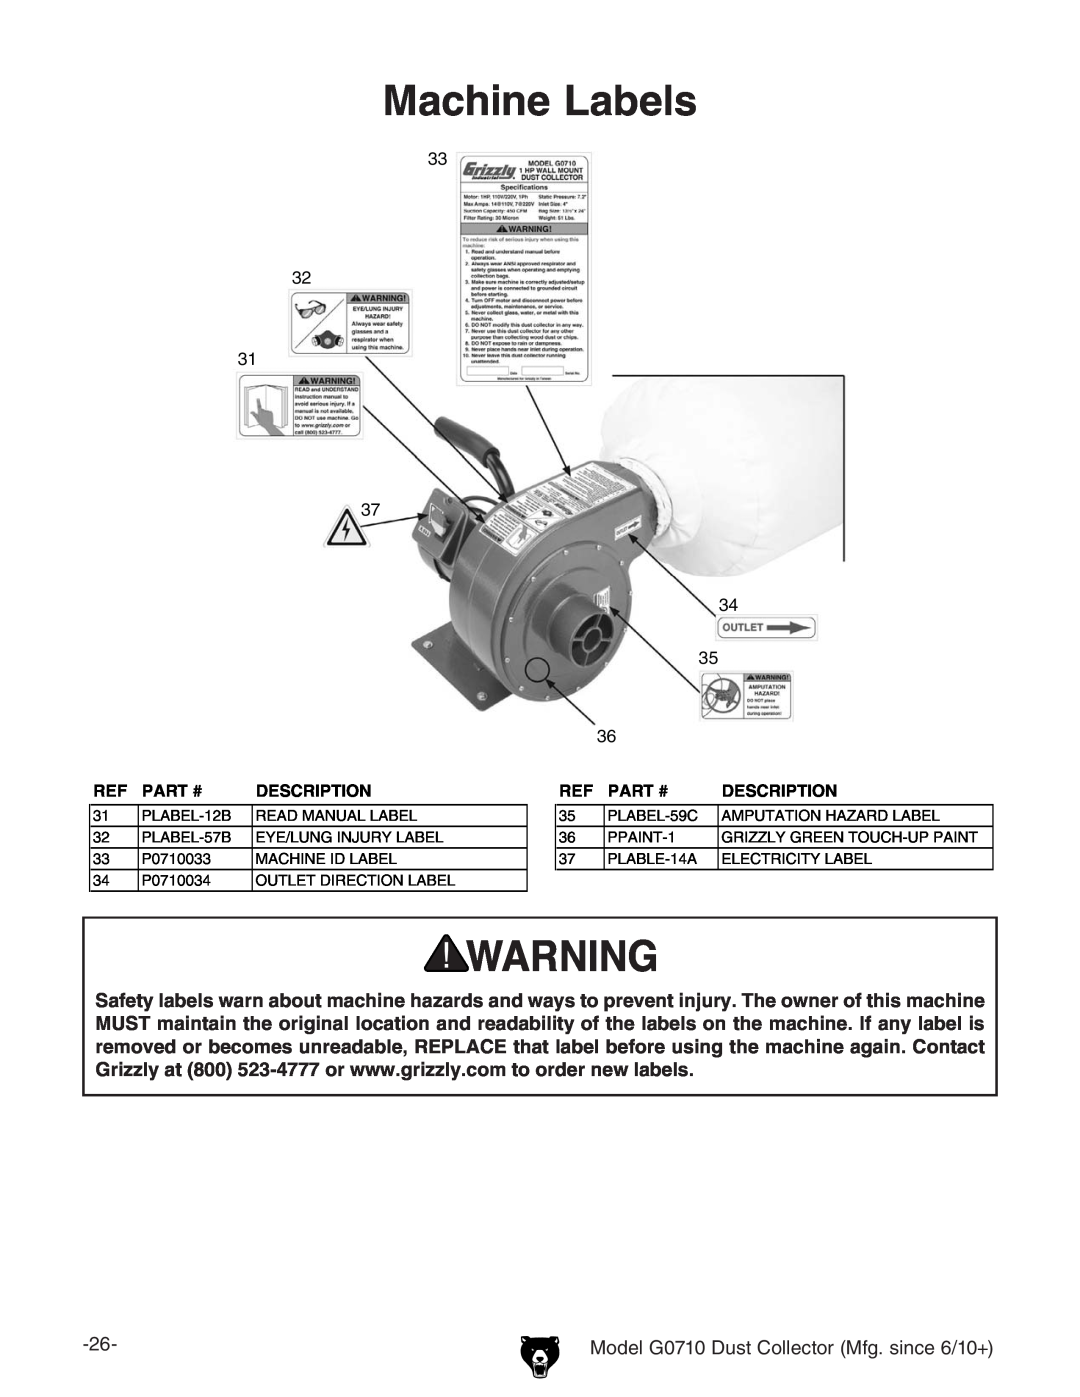 Grizzly G0710 owner manual Machine Labels, Part #, Description 